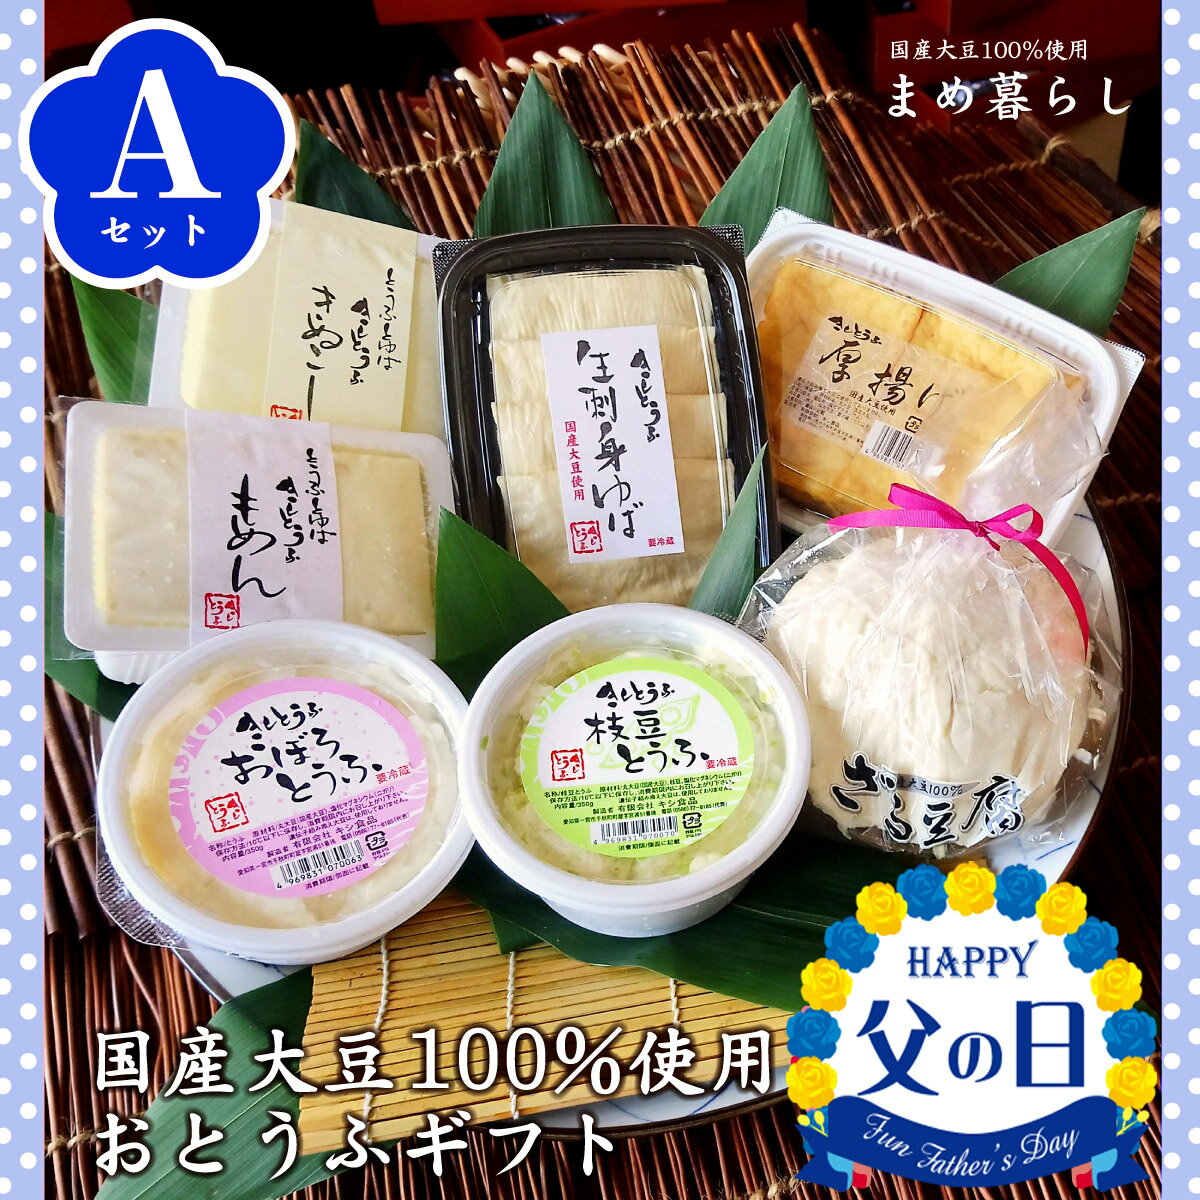 【送料込】豆腐 ギフト お歳暮 愛知県産ふくゆたか大豆100